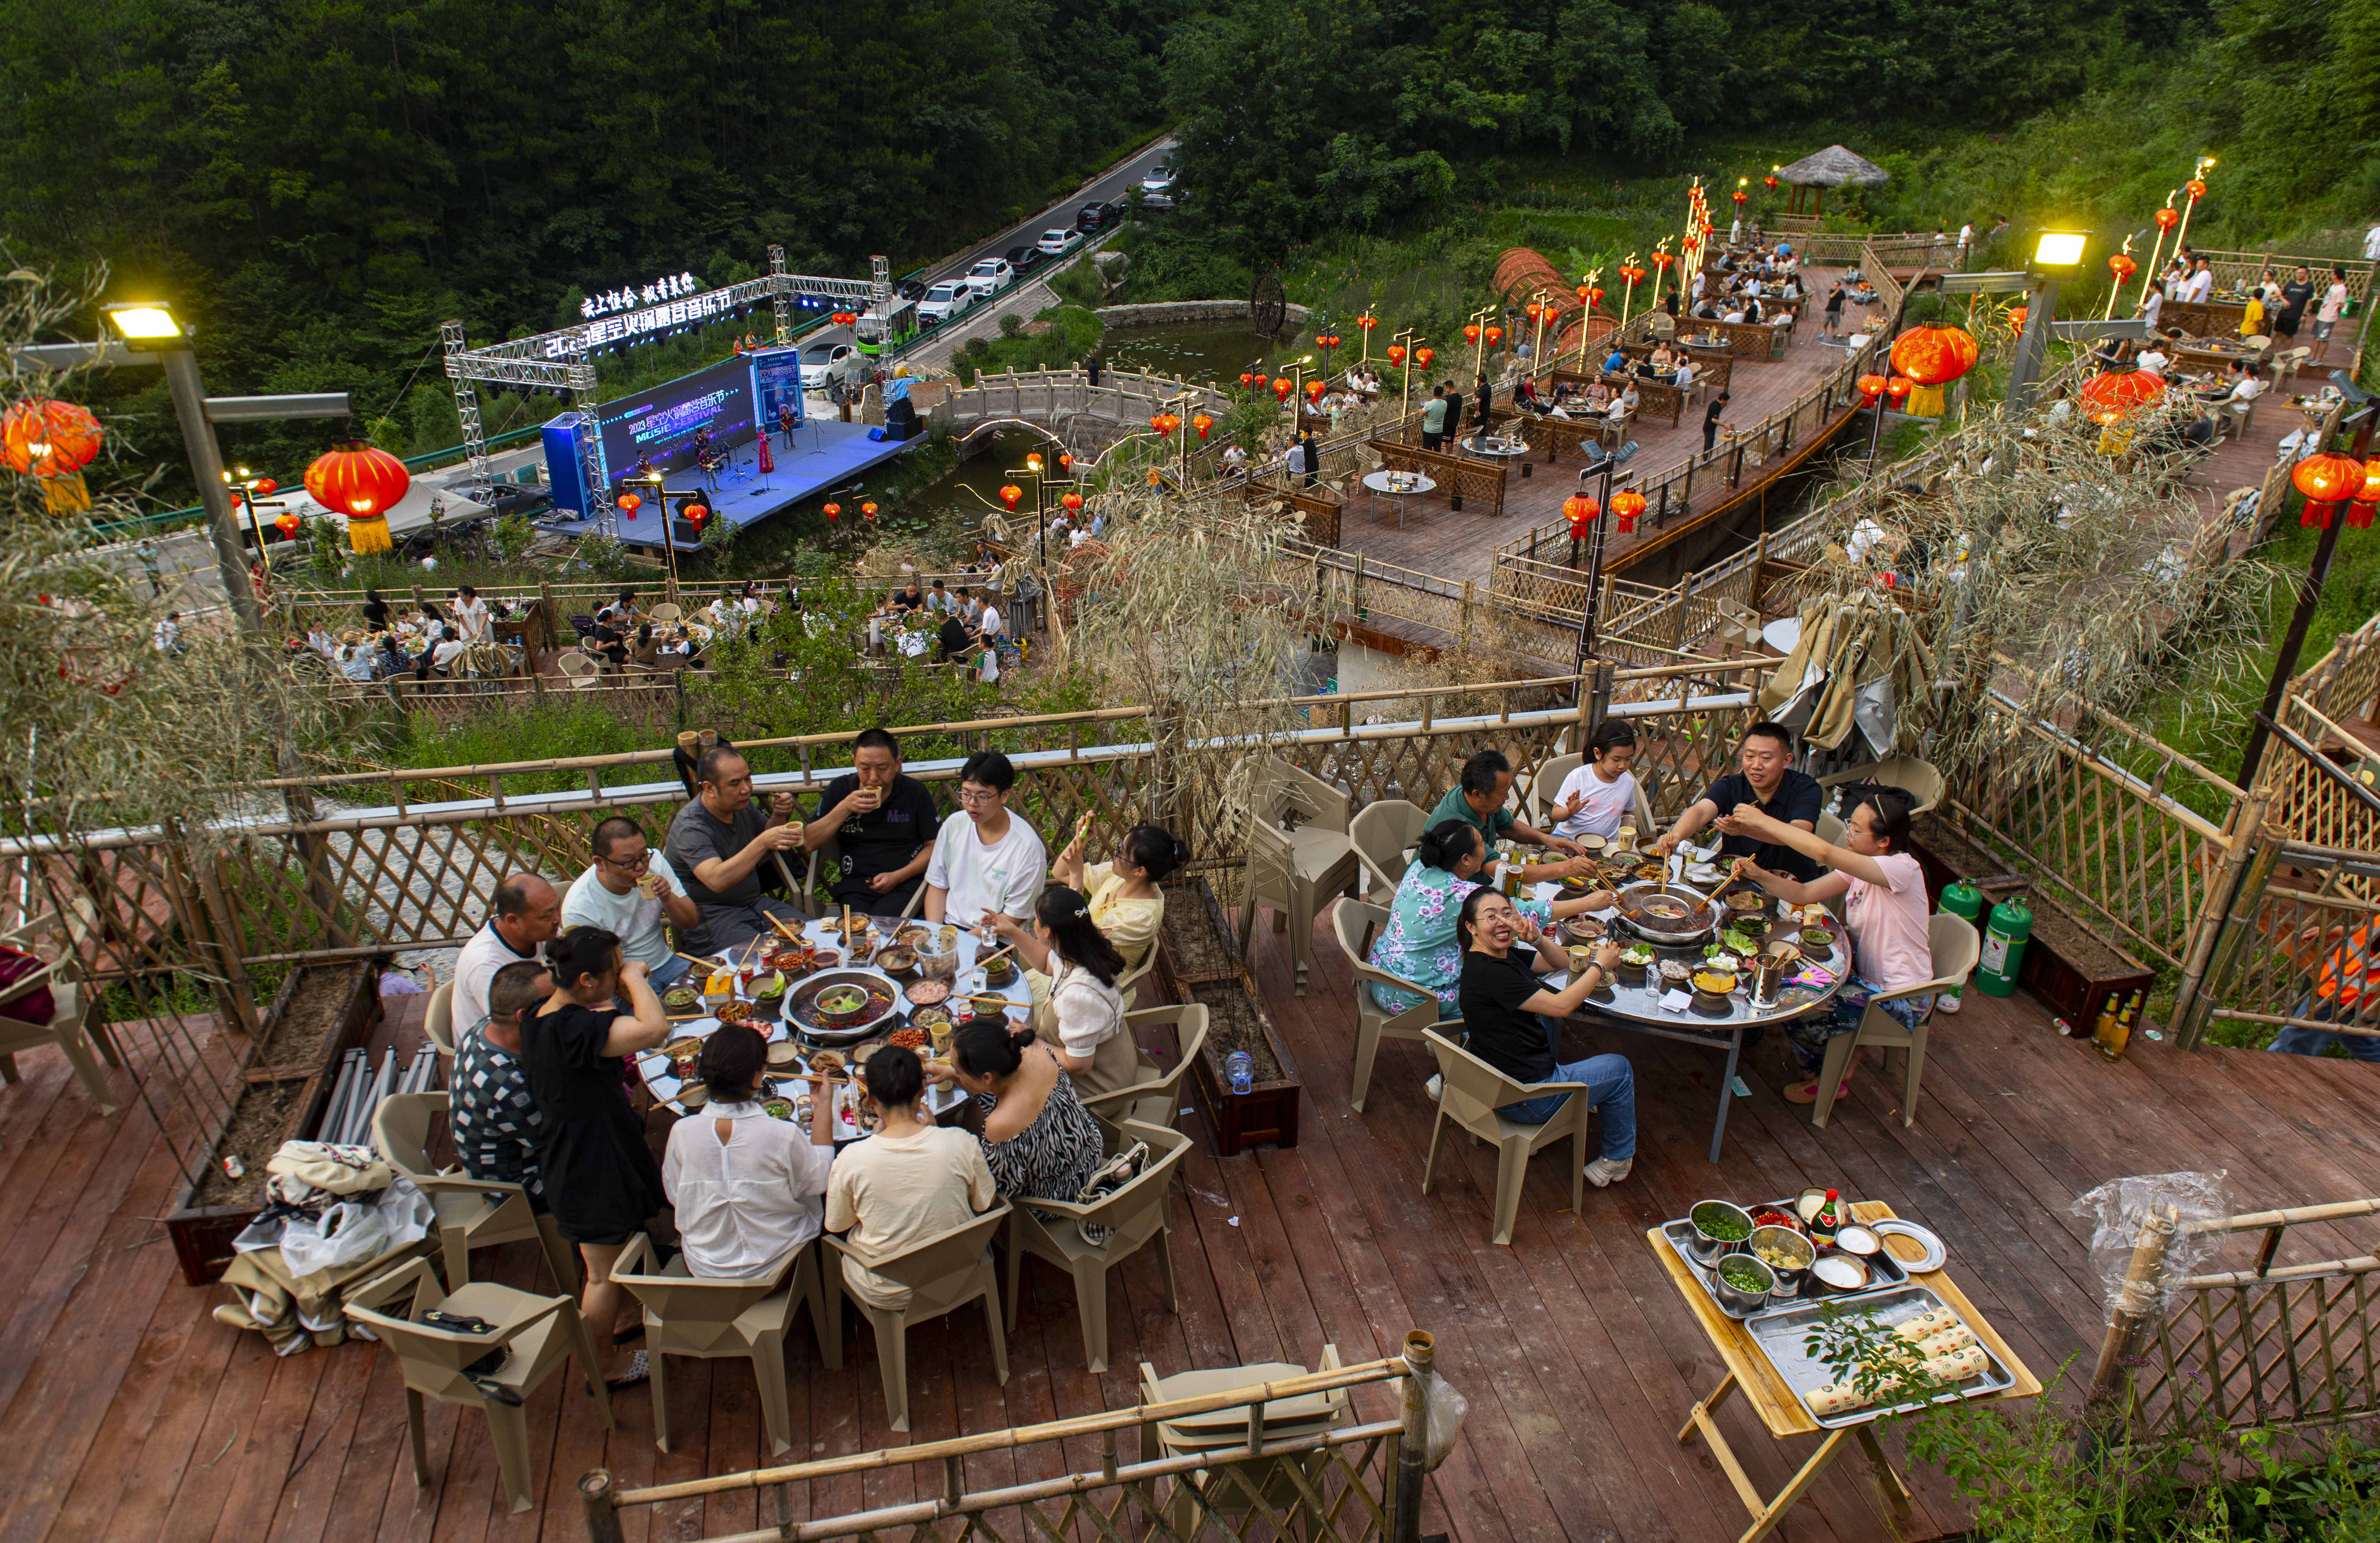 8月12日,万州区三峡恒合旅游度假区,星空火锅露营音乐节正举行,锡引